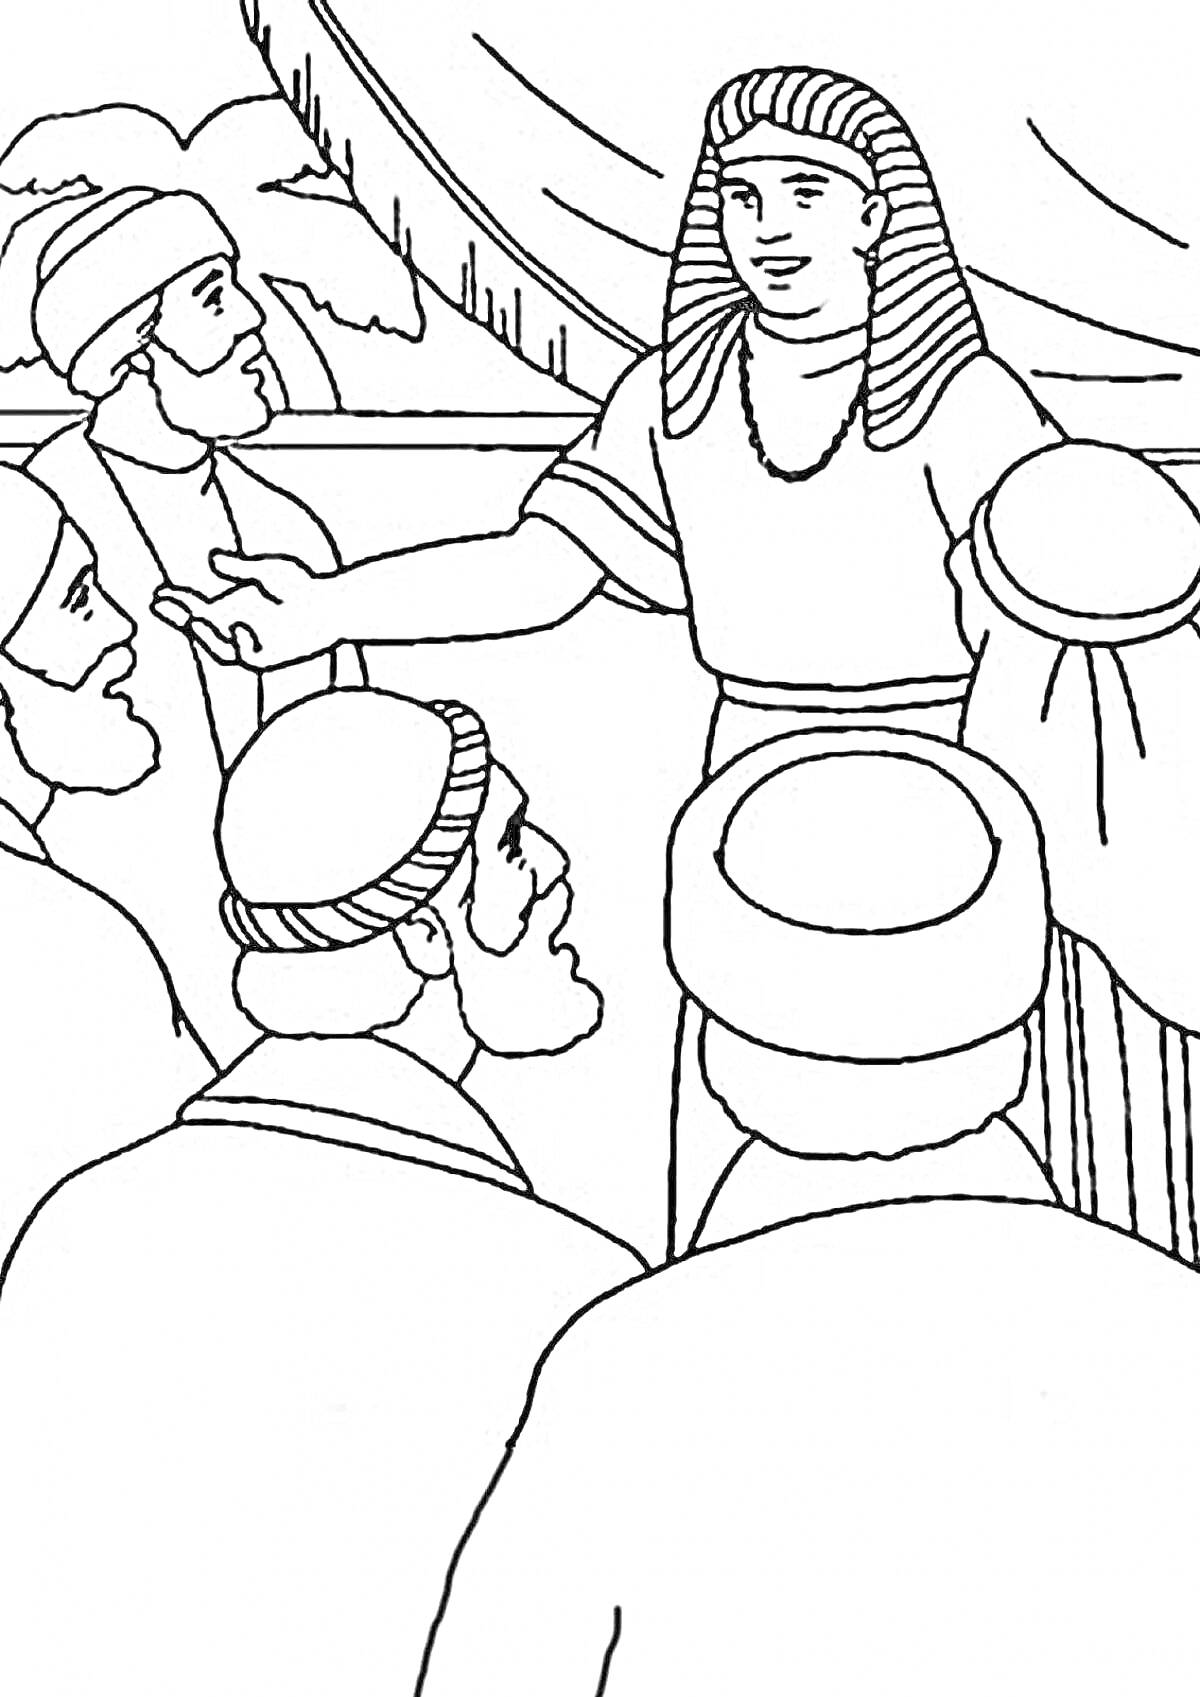 Раскраска Иосиф общается с братьями, Иосиф в египетском головном уборе, братья в шапках на фоне палатки.